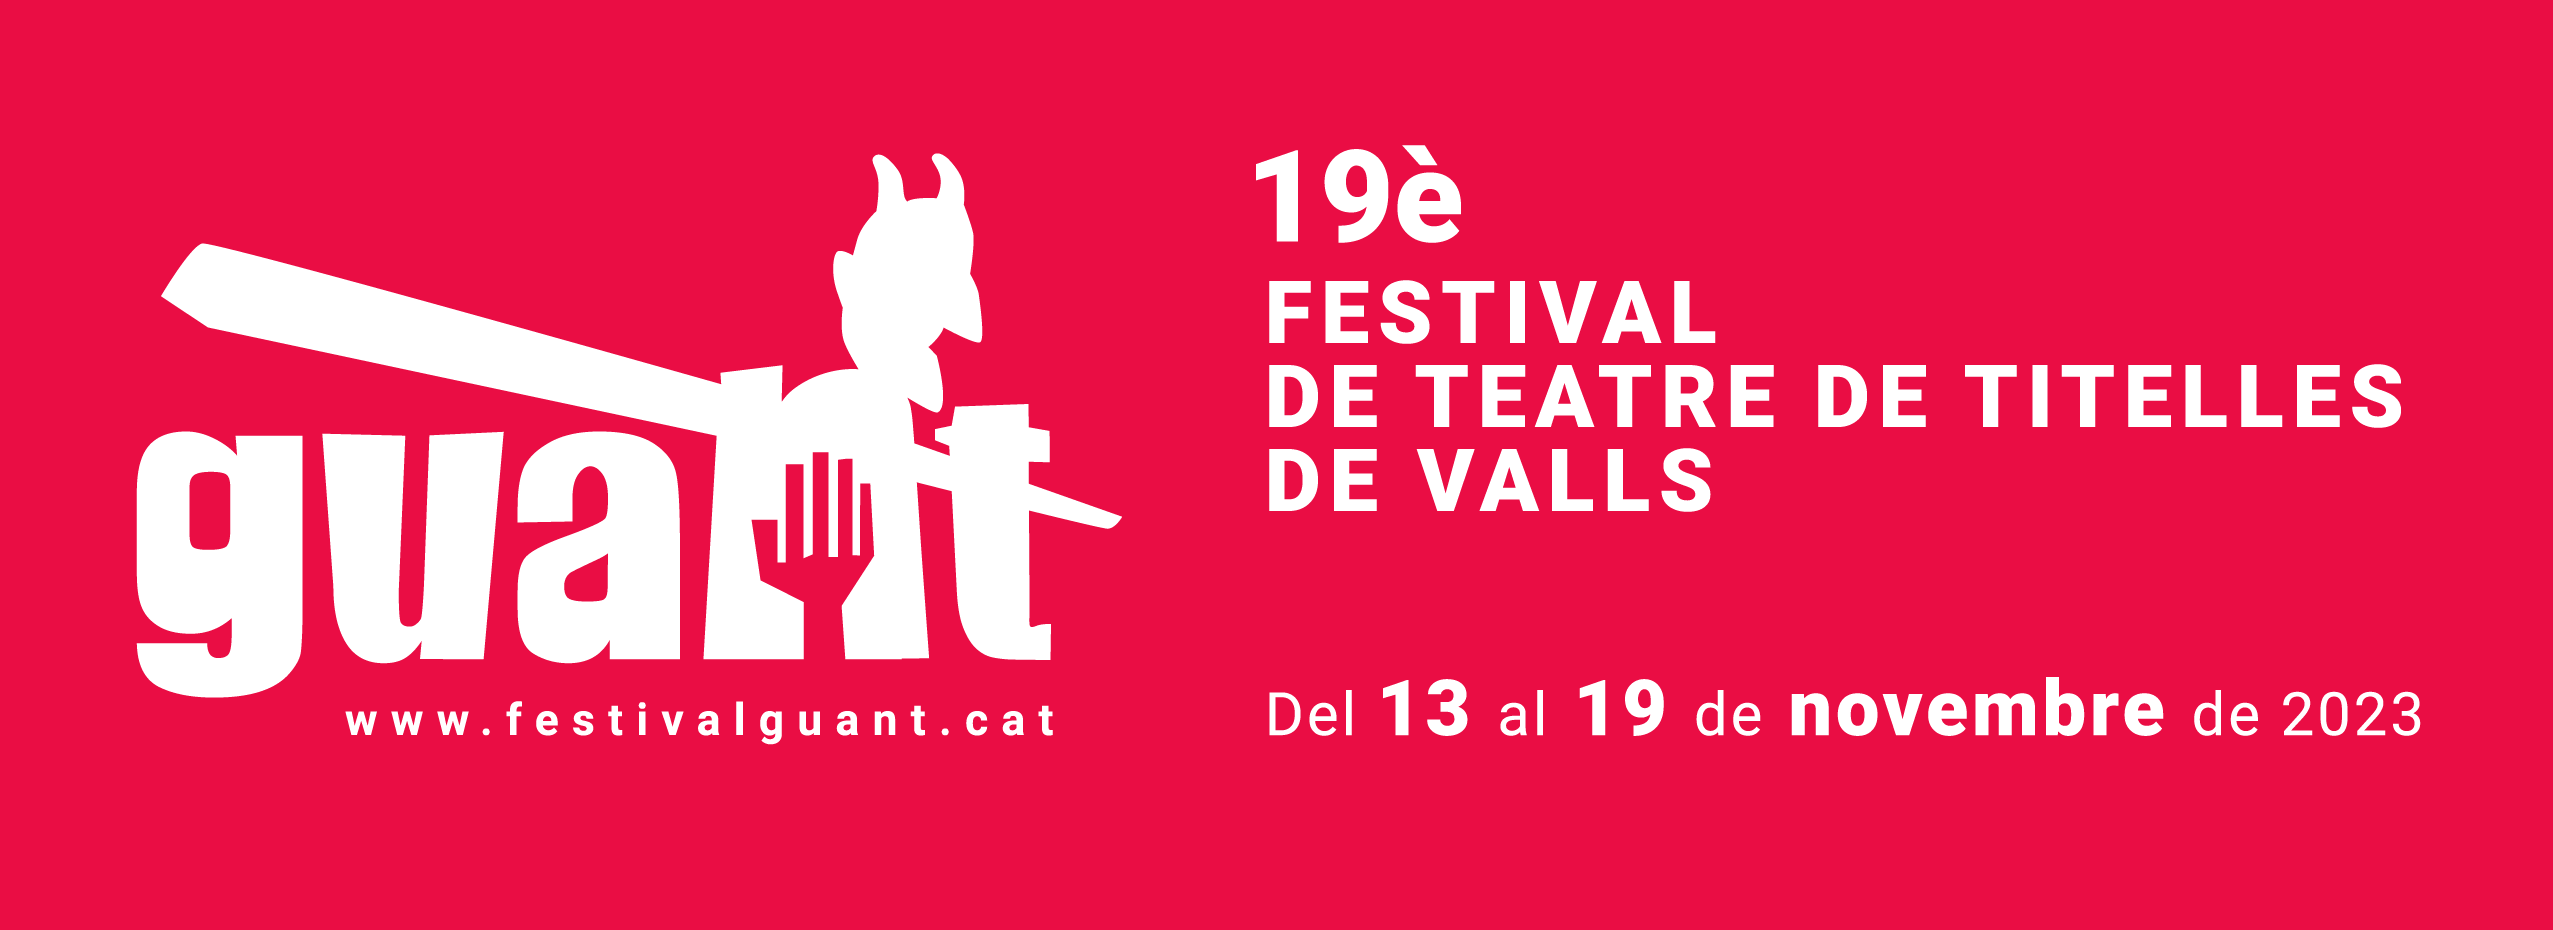 19è Festival internacional de teatre de titelles de Valls | TALLER DE TITELLES AMB PAPIROFLÈXIA